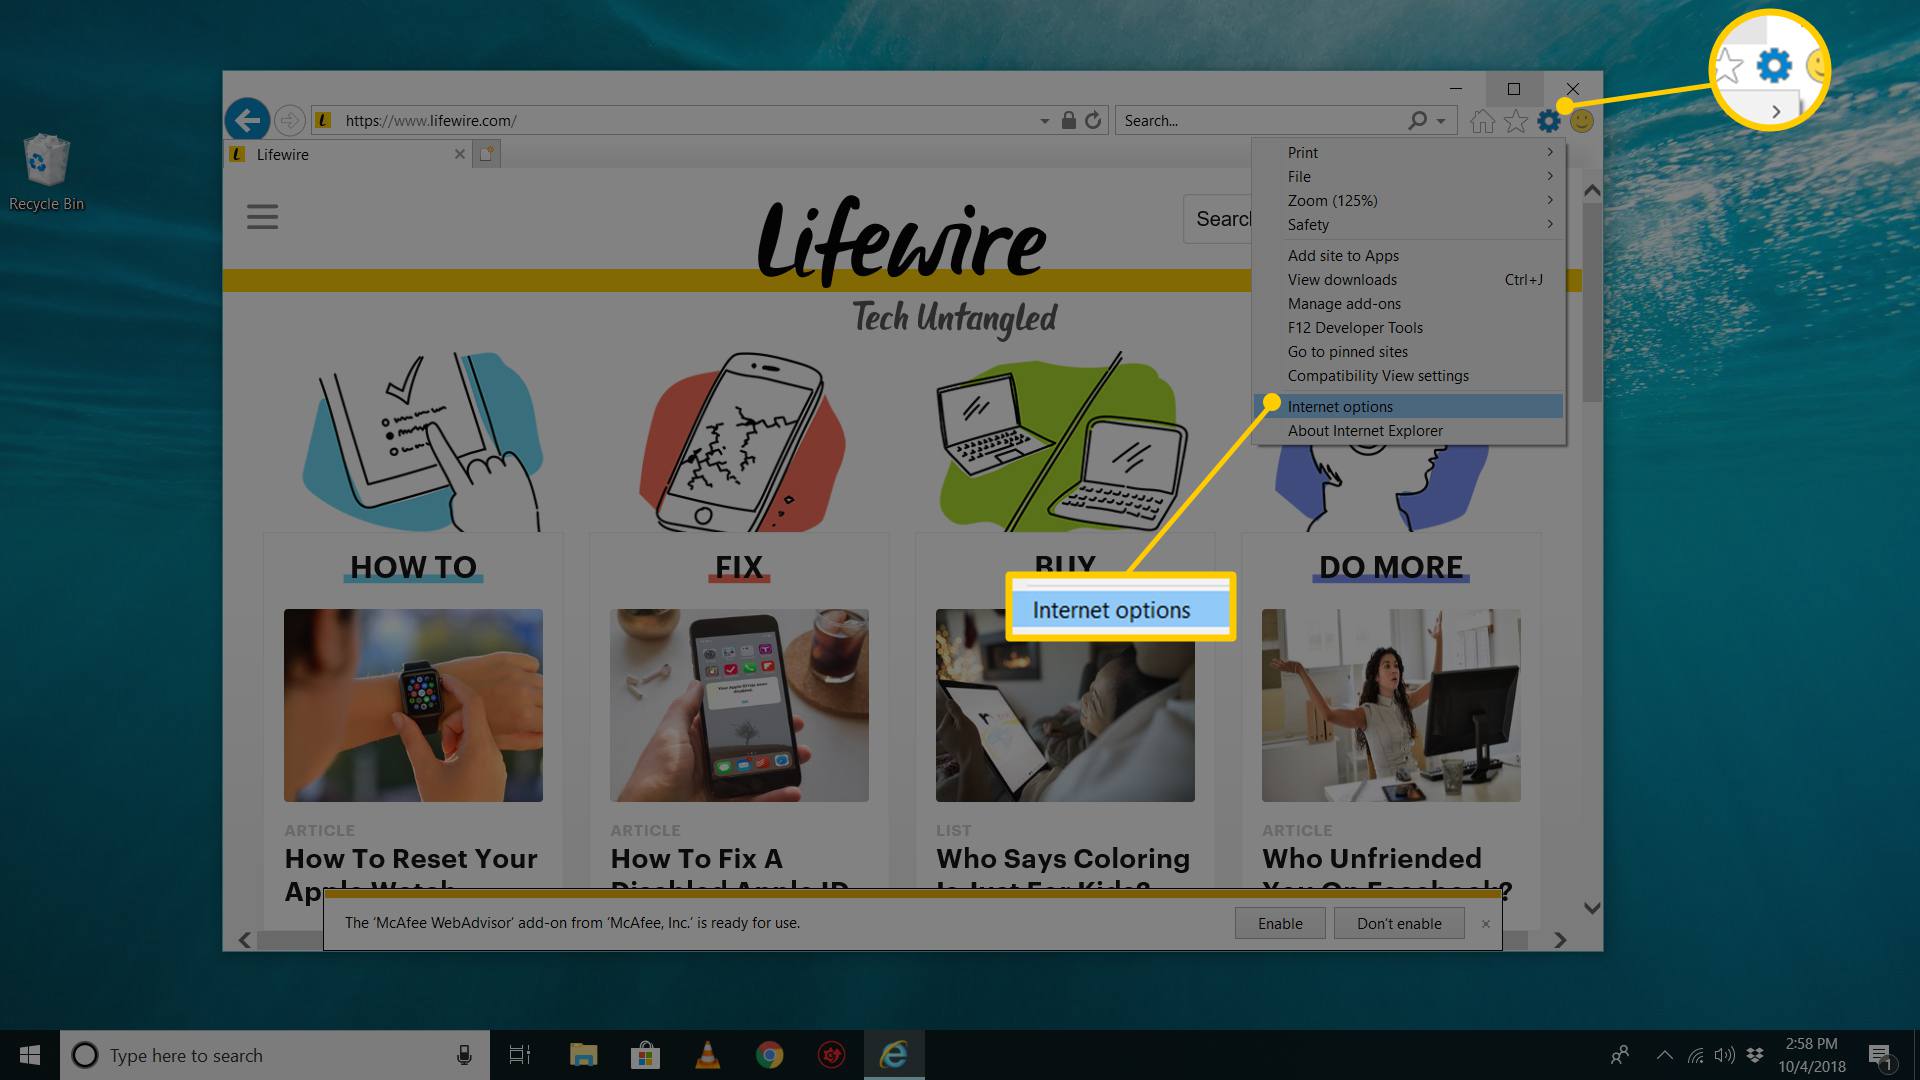 Verktygsknapp och menyalternativ för Internetalternativ i Windows 10 Internet Explorer